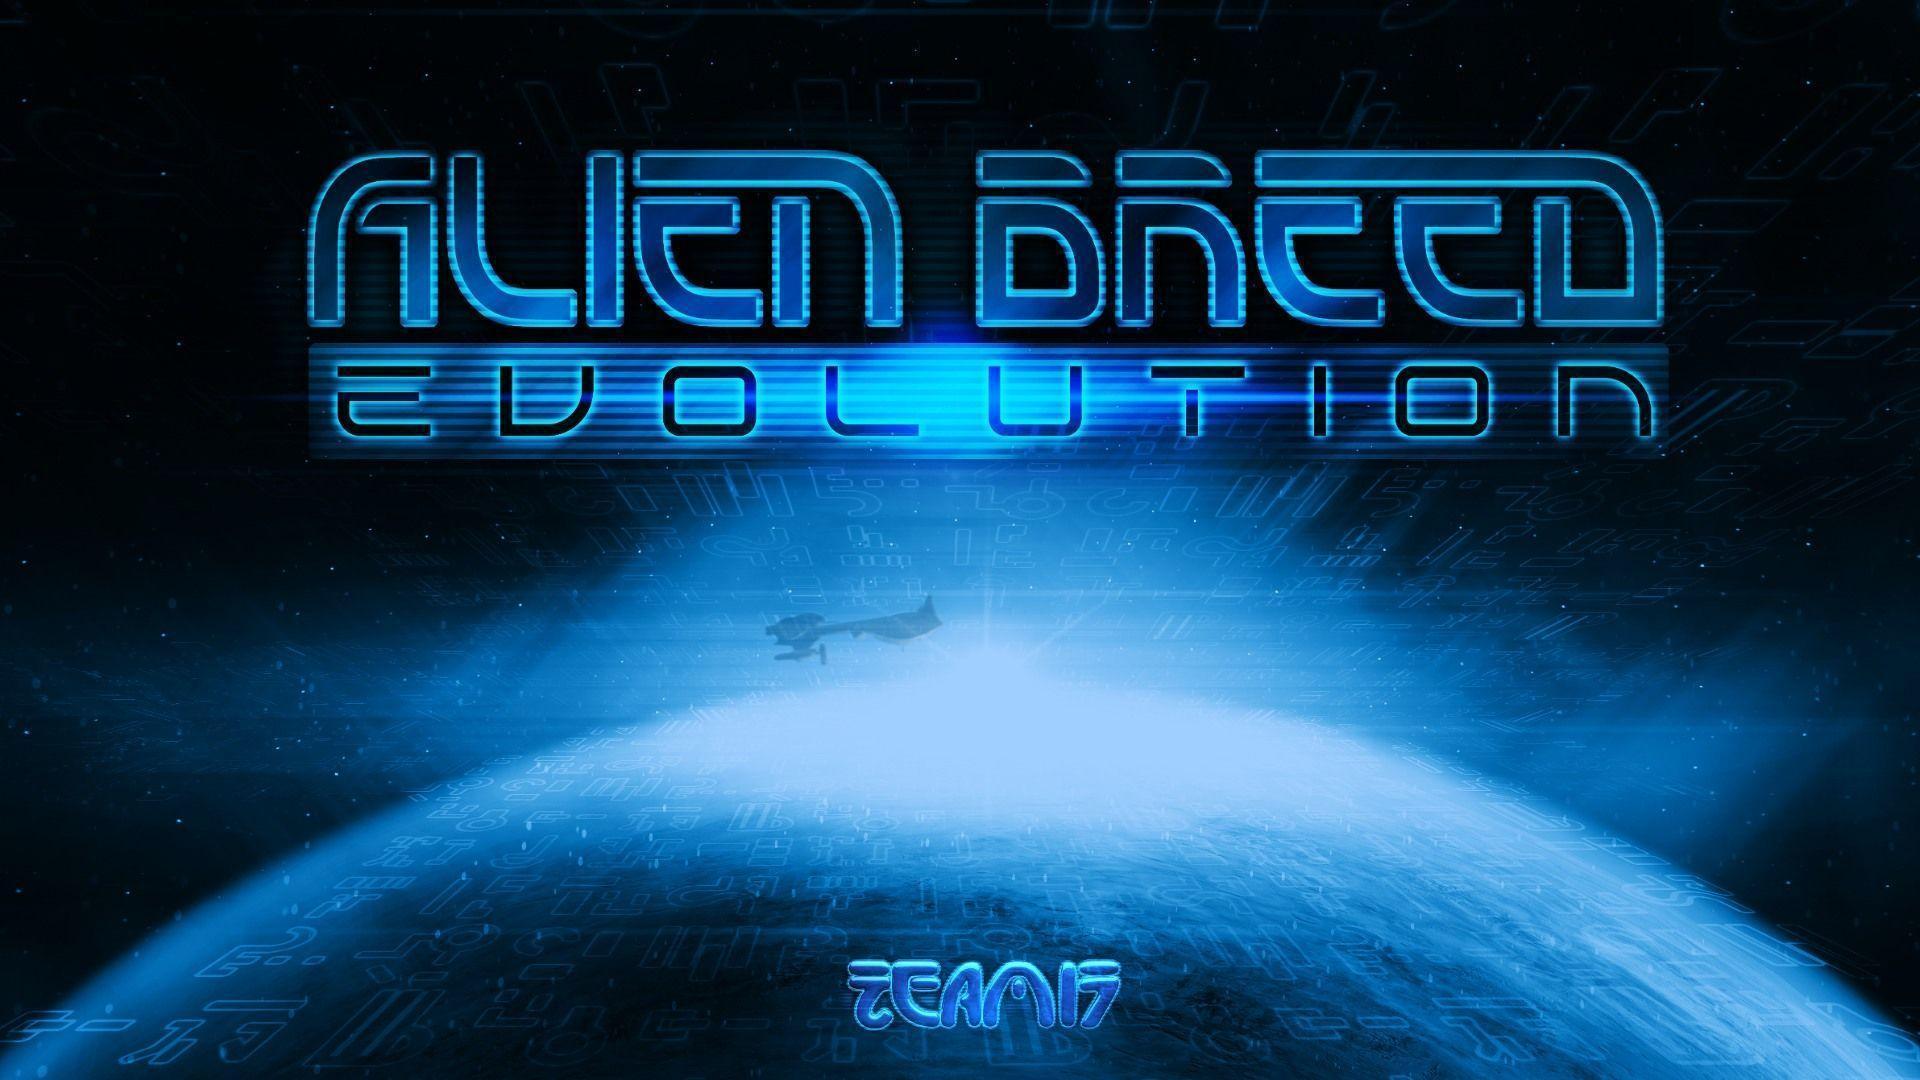 Alien Breed Evolution wallpaper